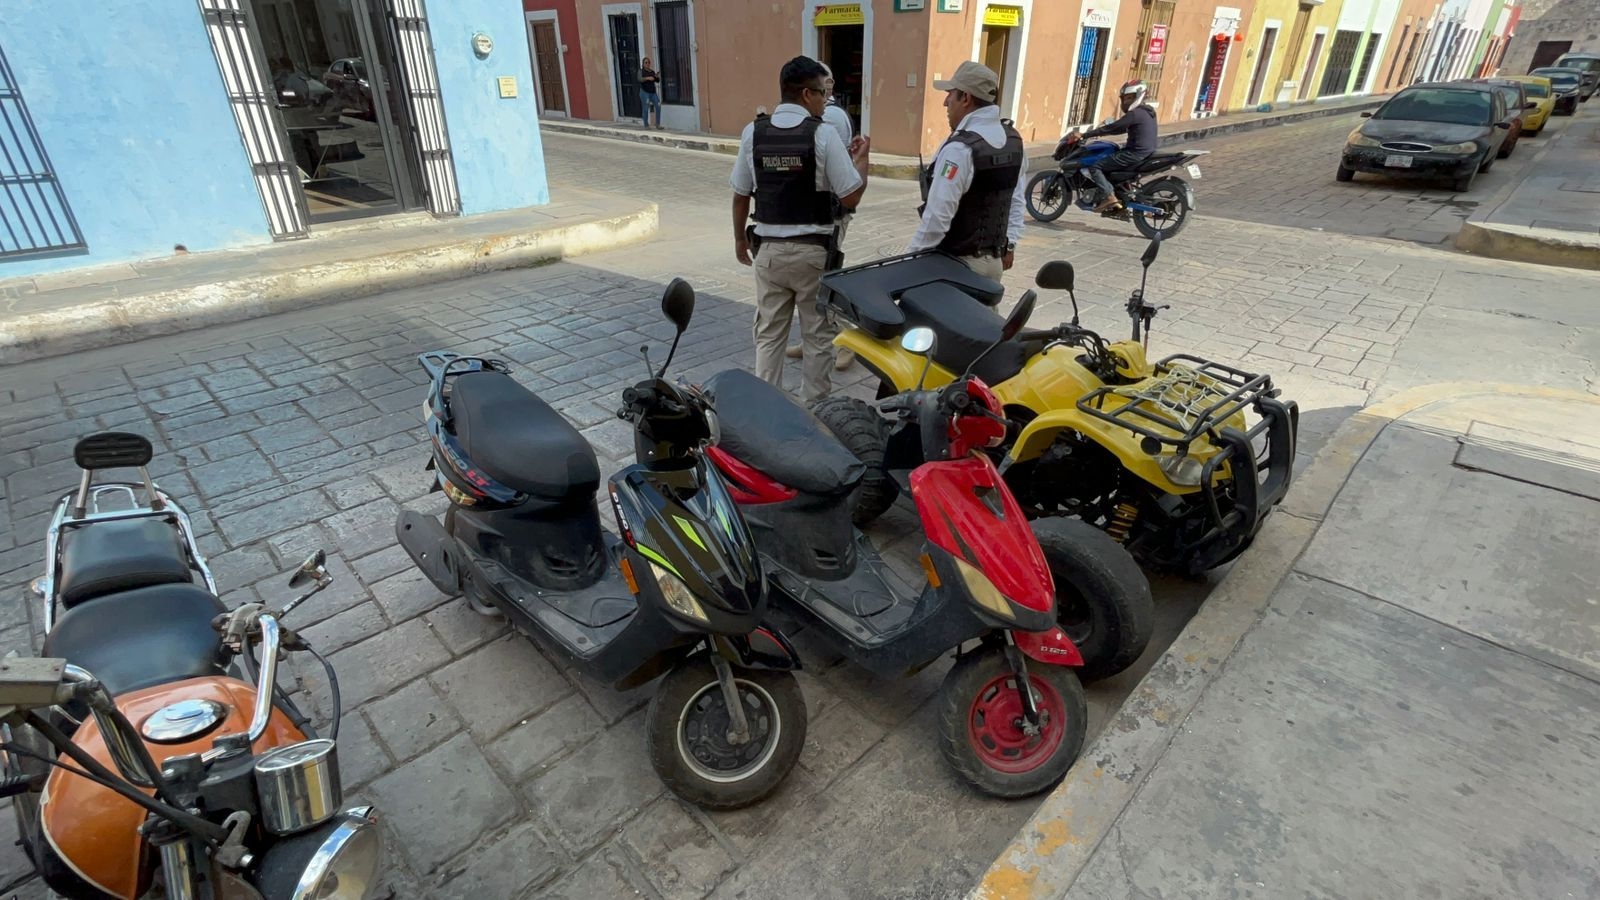 Los dueños de las motocicletas denunciaron el robo de sus baterías en el Centro de Campeche